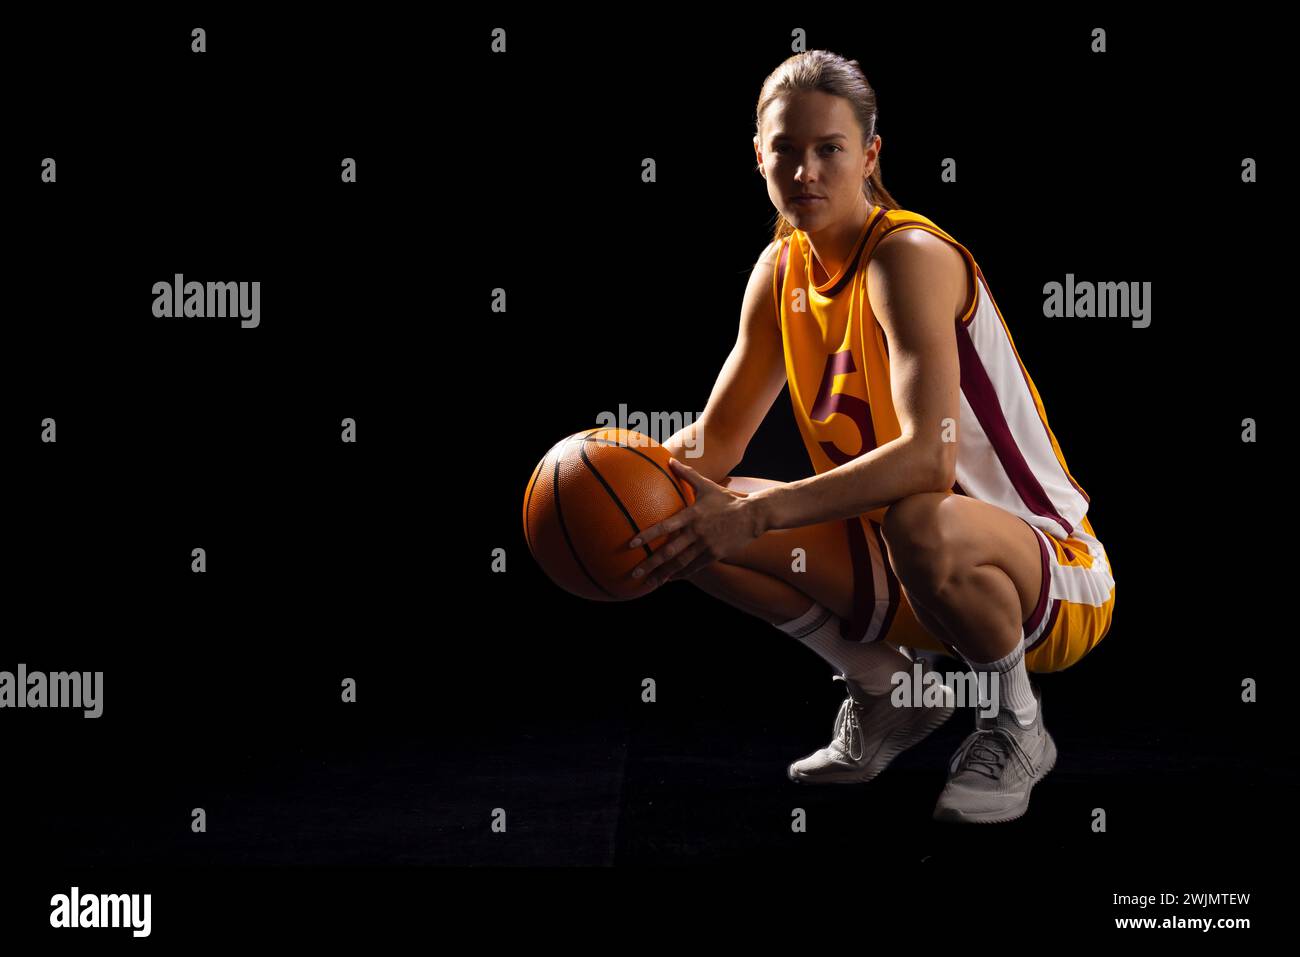 Weibliche Basketballspielerin in Pose zeigt Fokus und Leichtathletik. Stockfoto